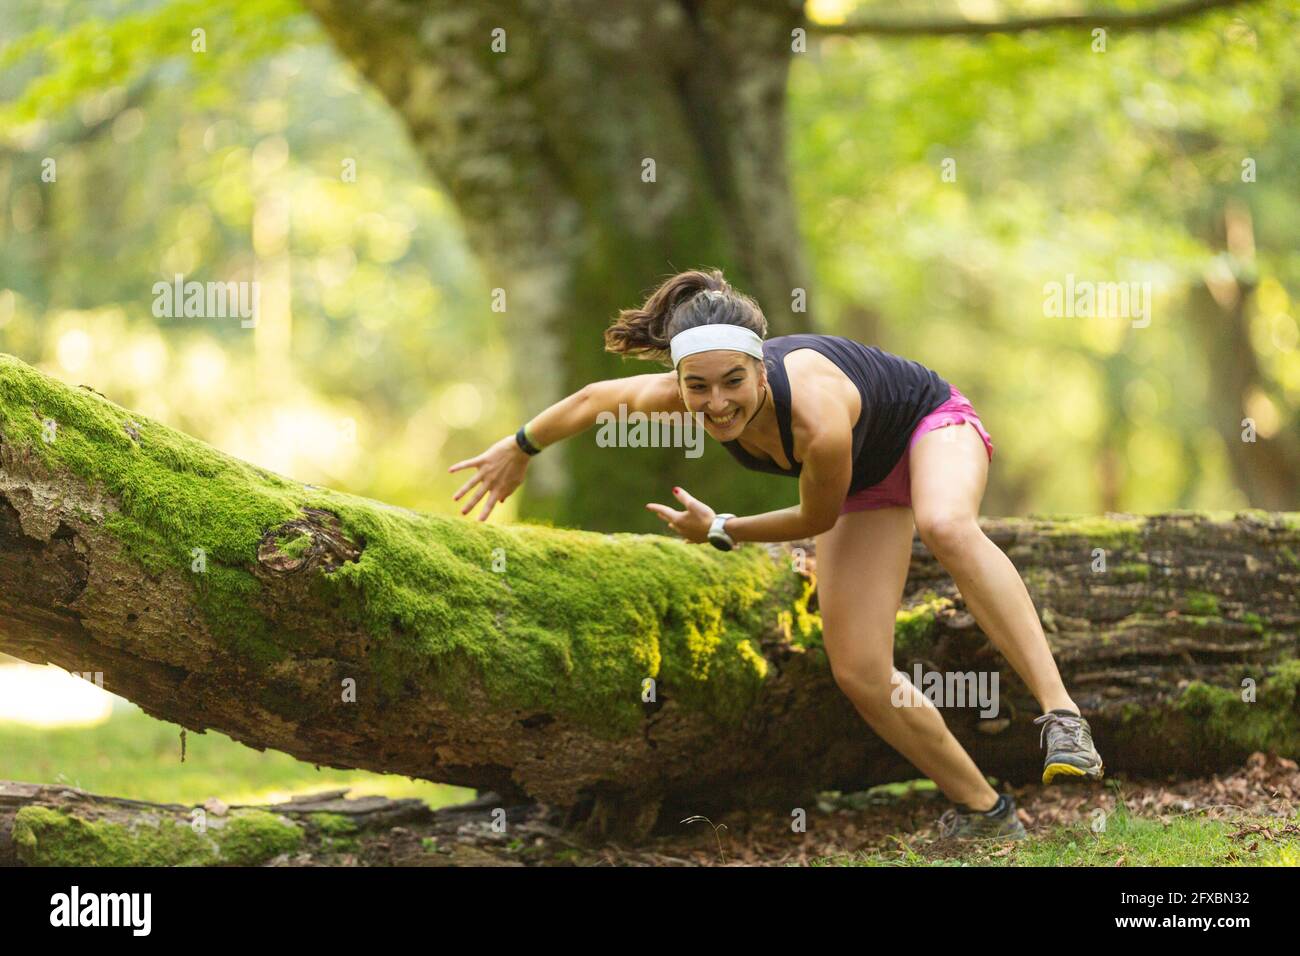 Aktive junge Trailrunnerin, die im Wald über einen gefallenen Baum springt Stockfoto